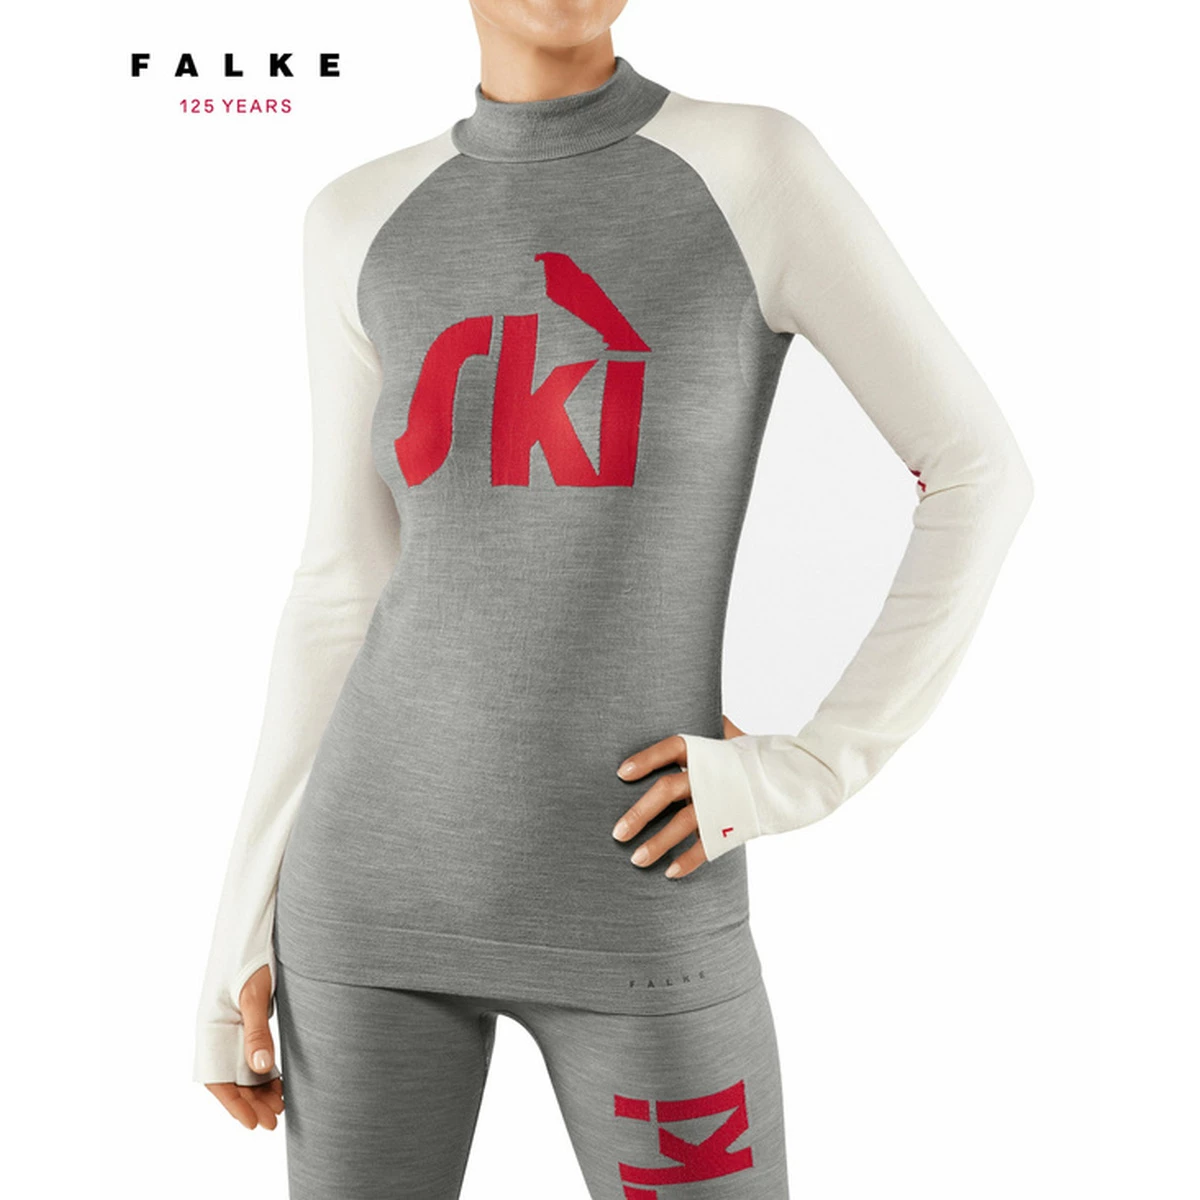 Falke Longsleeve Shirt 125 - Thermokleding - Wintersportkleding - Wintersport Intersport van den Broek Biggelaar